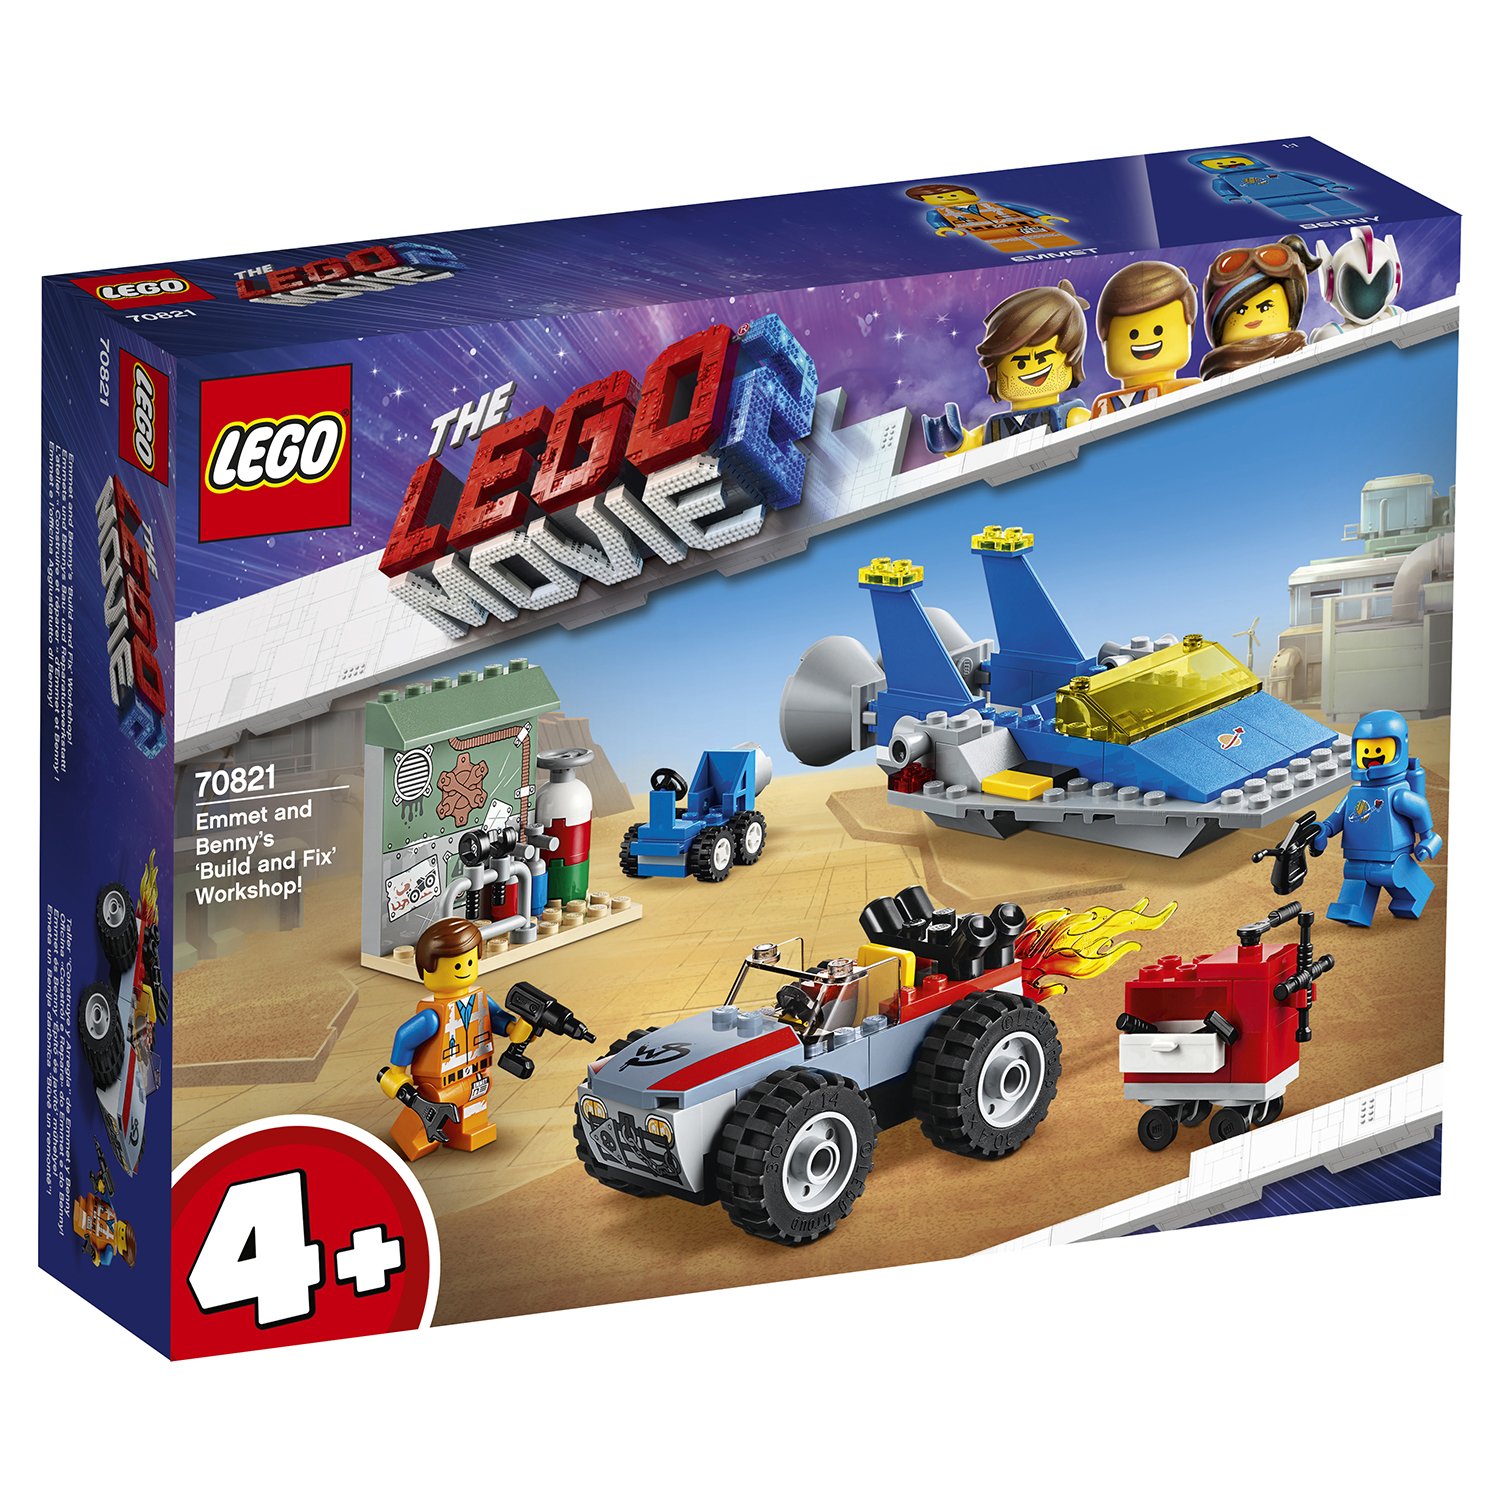 Lego Movie 70821 Мастерская «Строим и чиним» Эммета и Бенни!